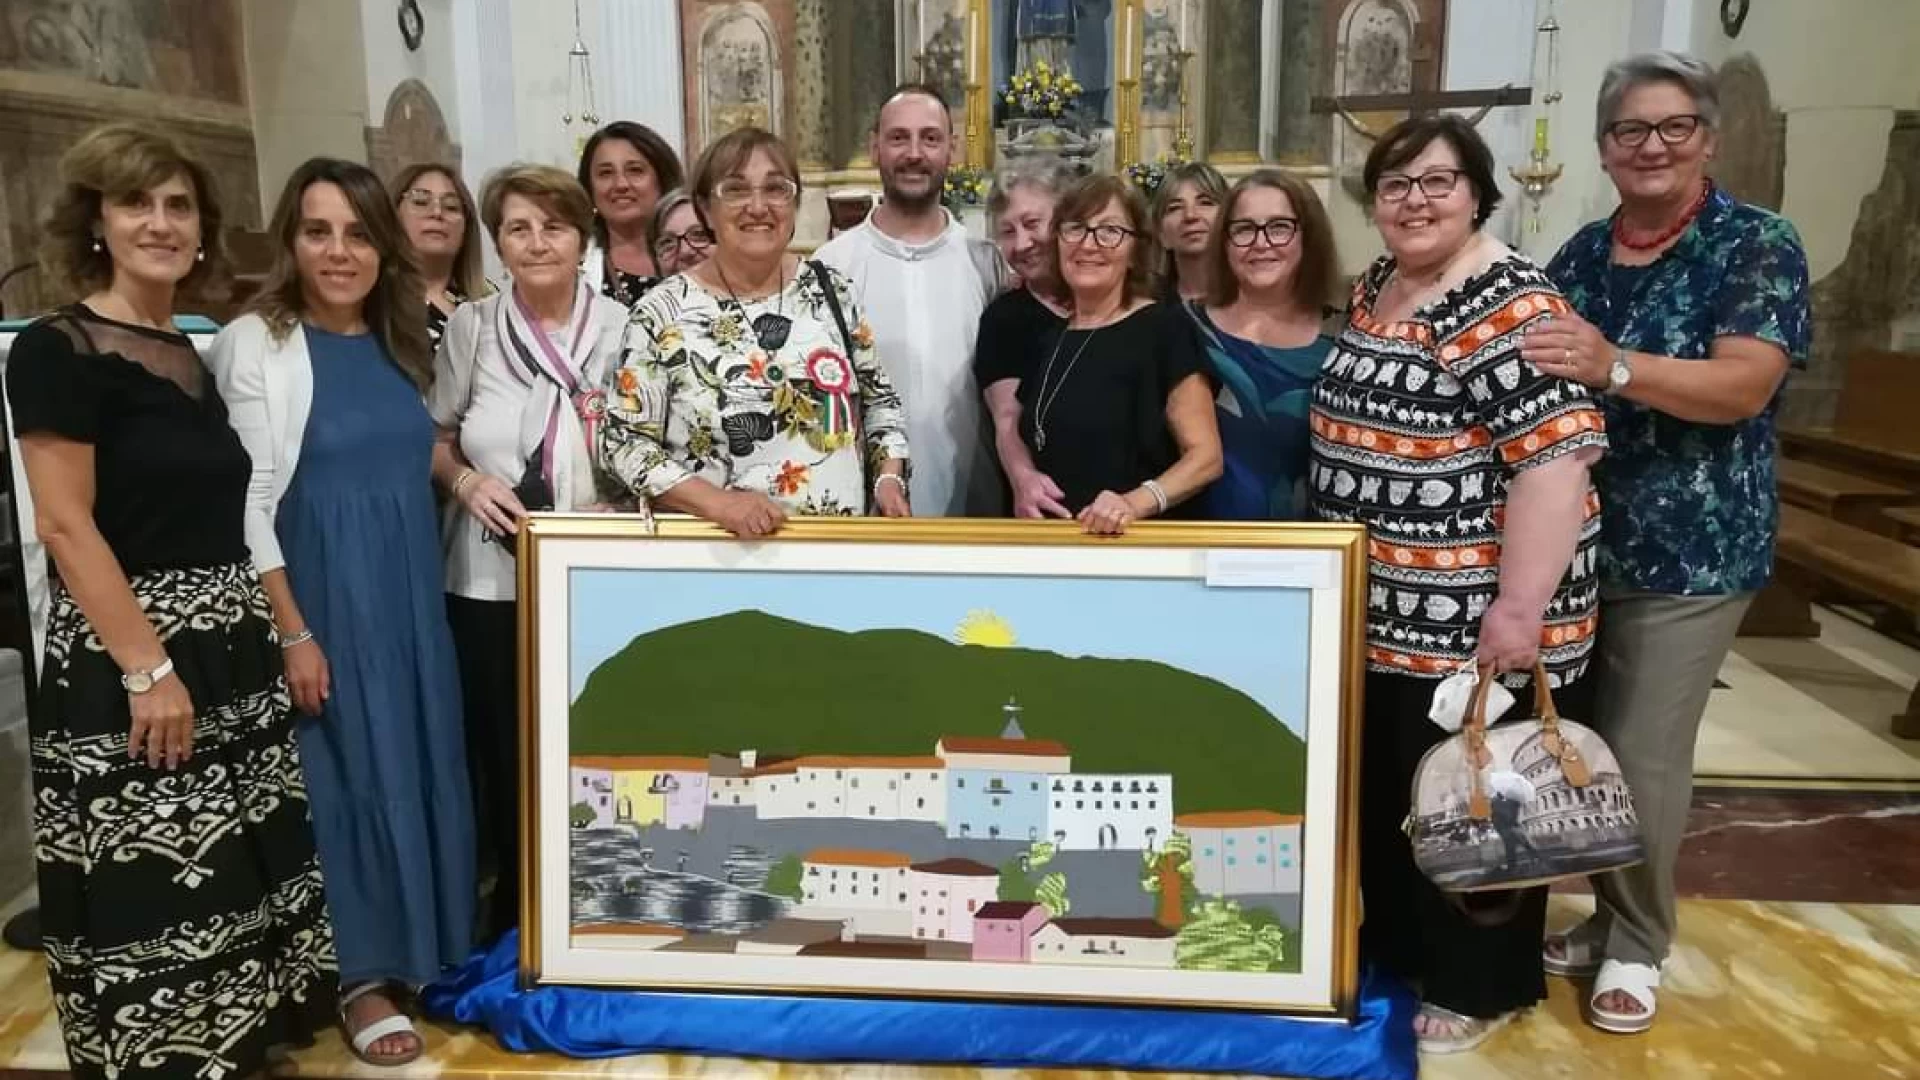 Colli a Volturno: le "uncinettaie" collesi donano quadro fatto a mano alla parrocchia.